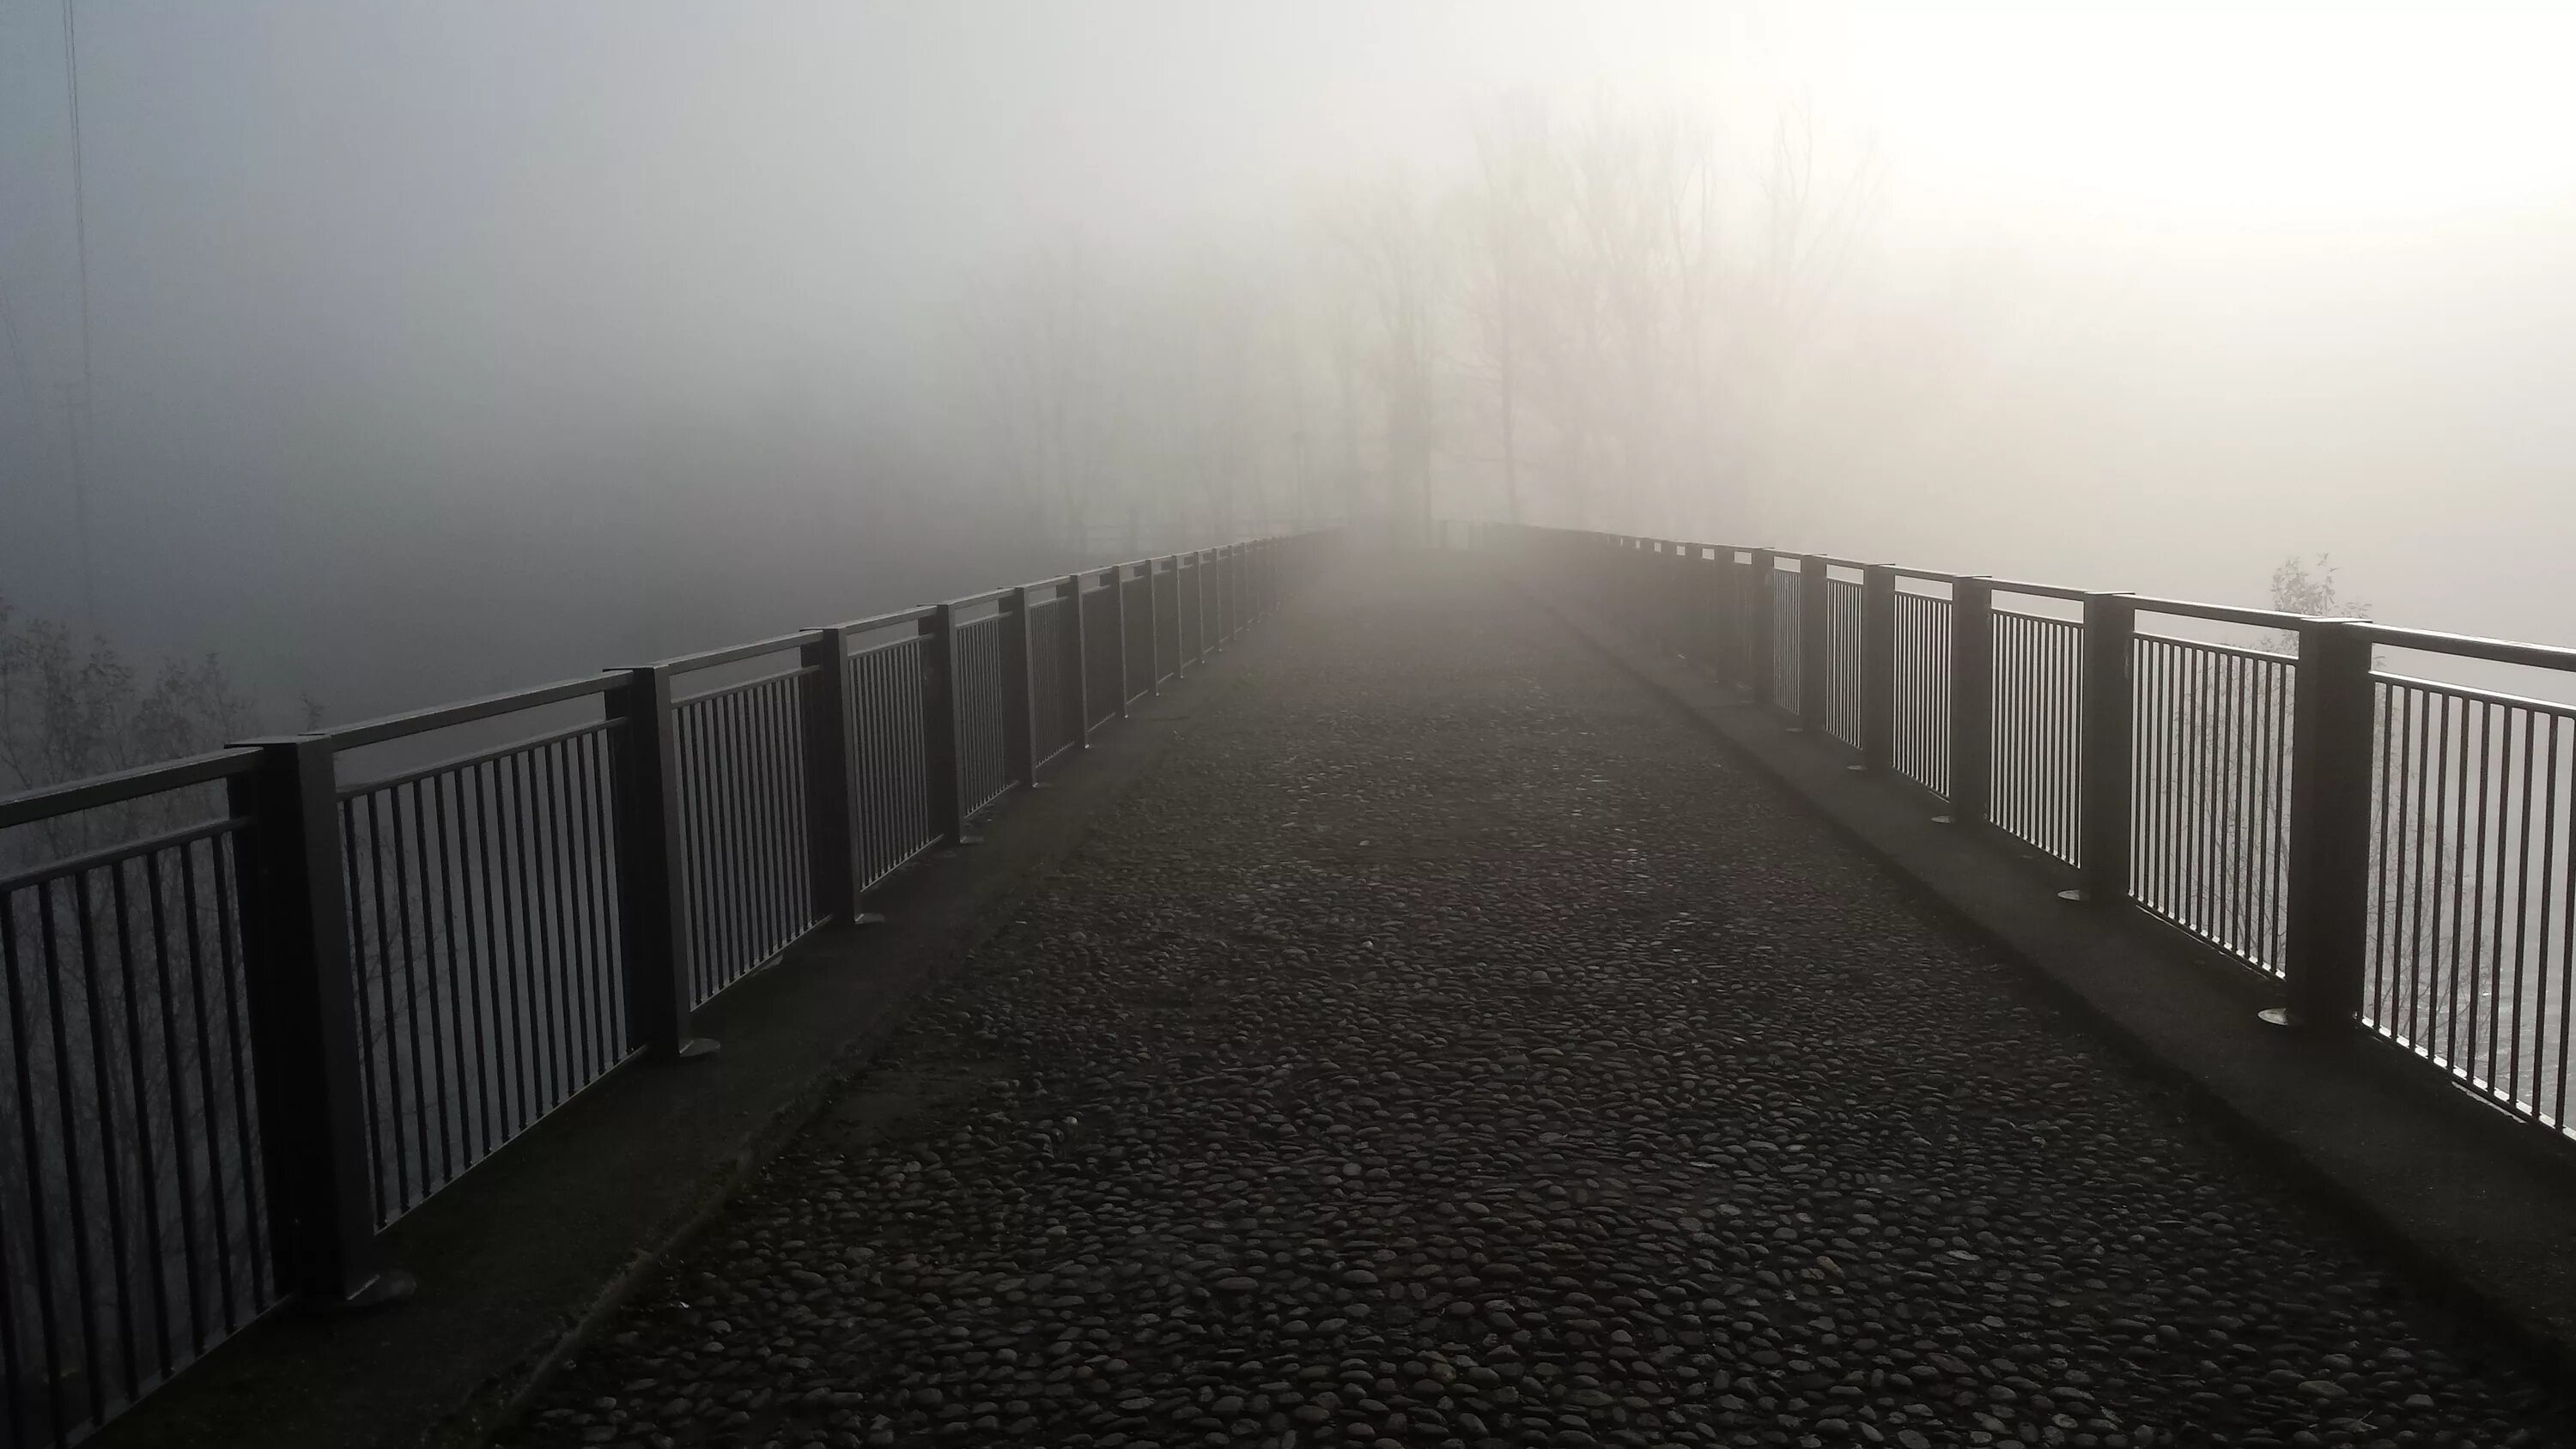 Город в тумане. Мост в тумане. Сильный туман. Улица в тумане. Ты ушла в эту легкий туман